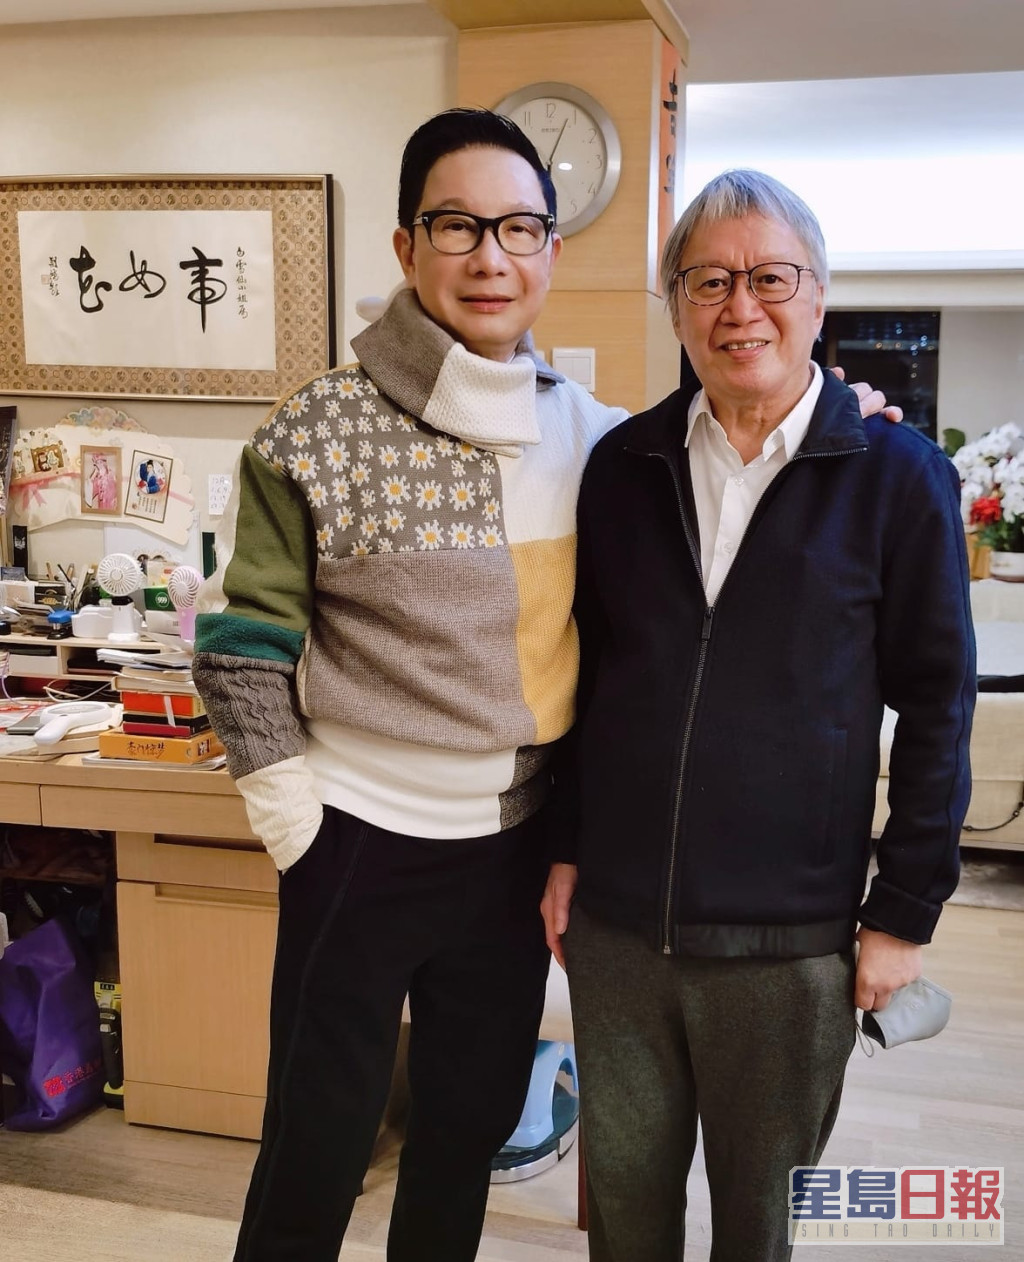 著名时装及形象设计师刘培基于facebook分享多张于白雪仙家中拍的照片。